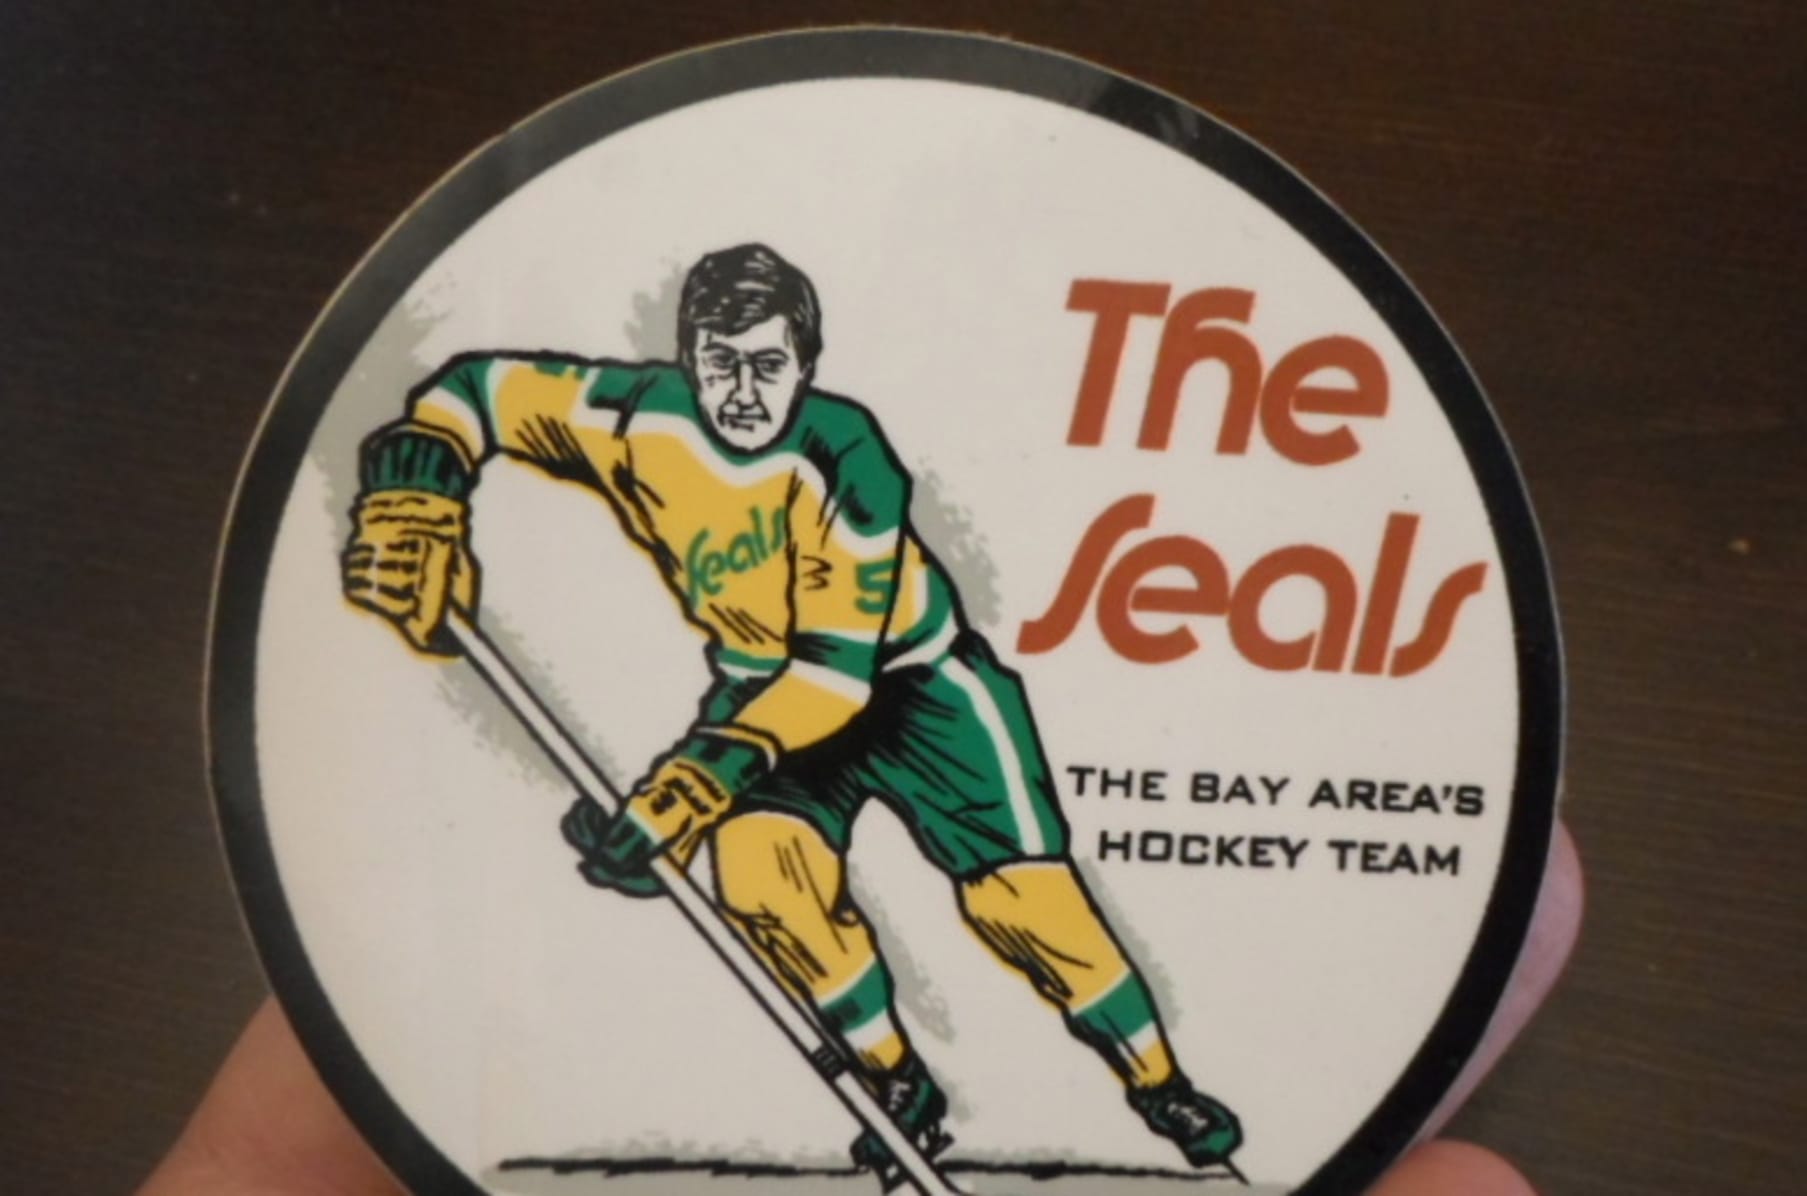 The California Golden Seals Story hockey documentary